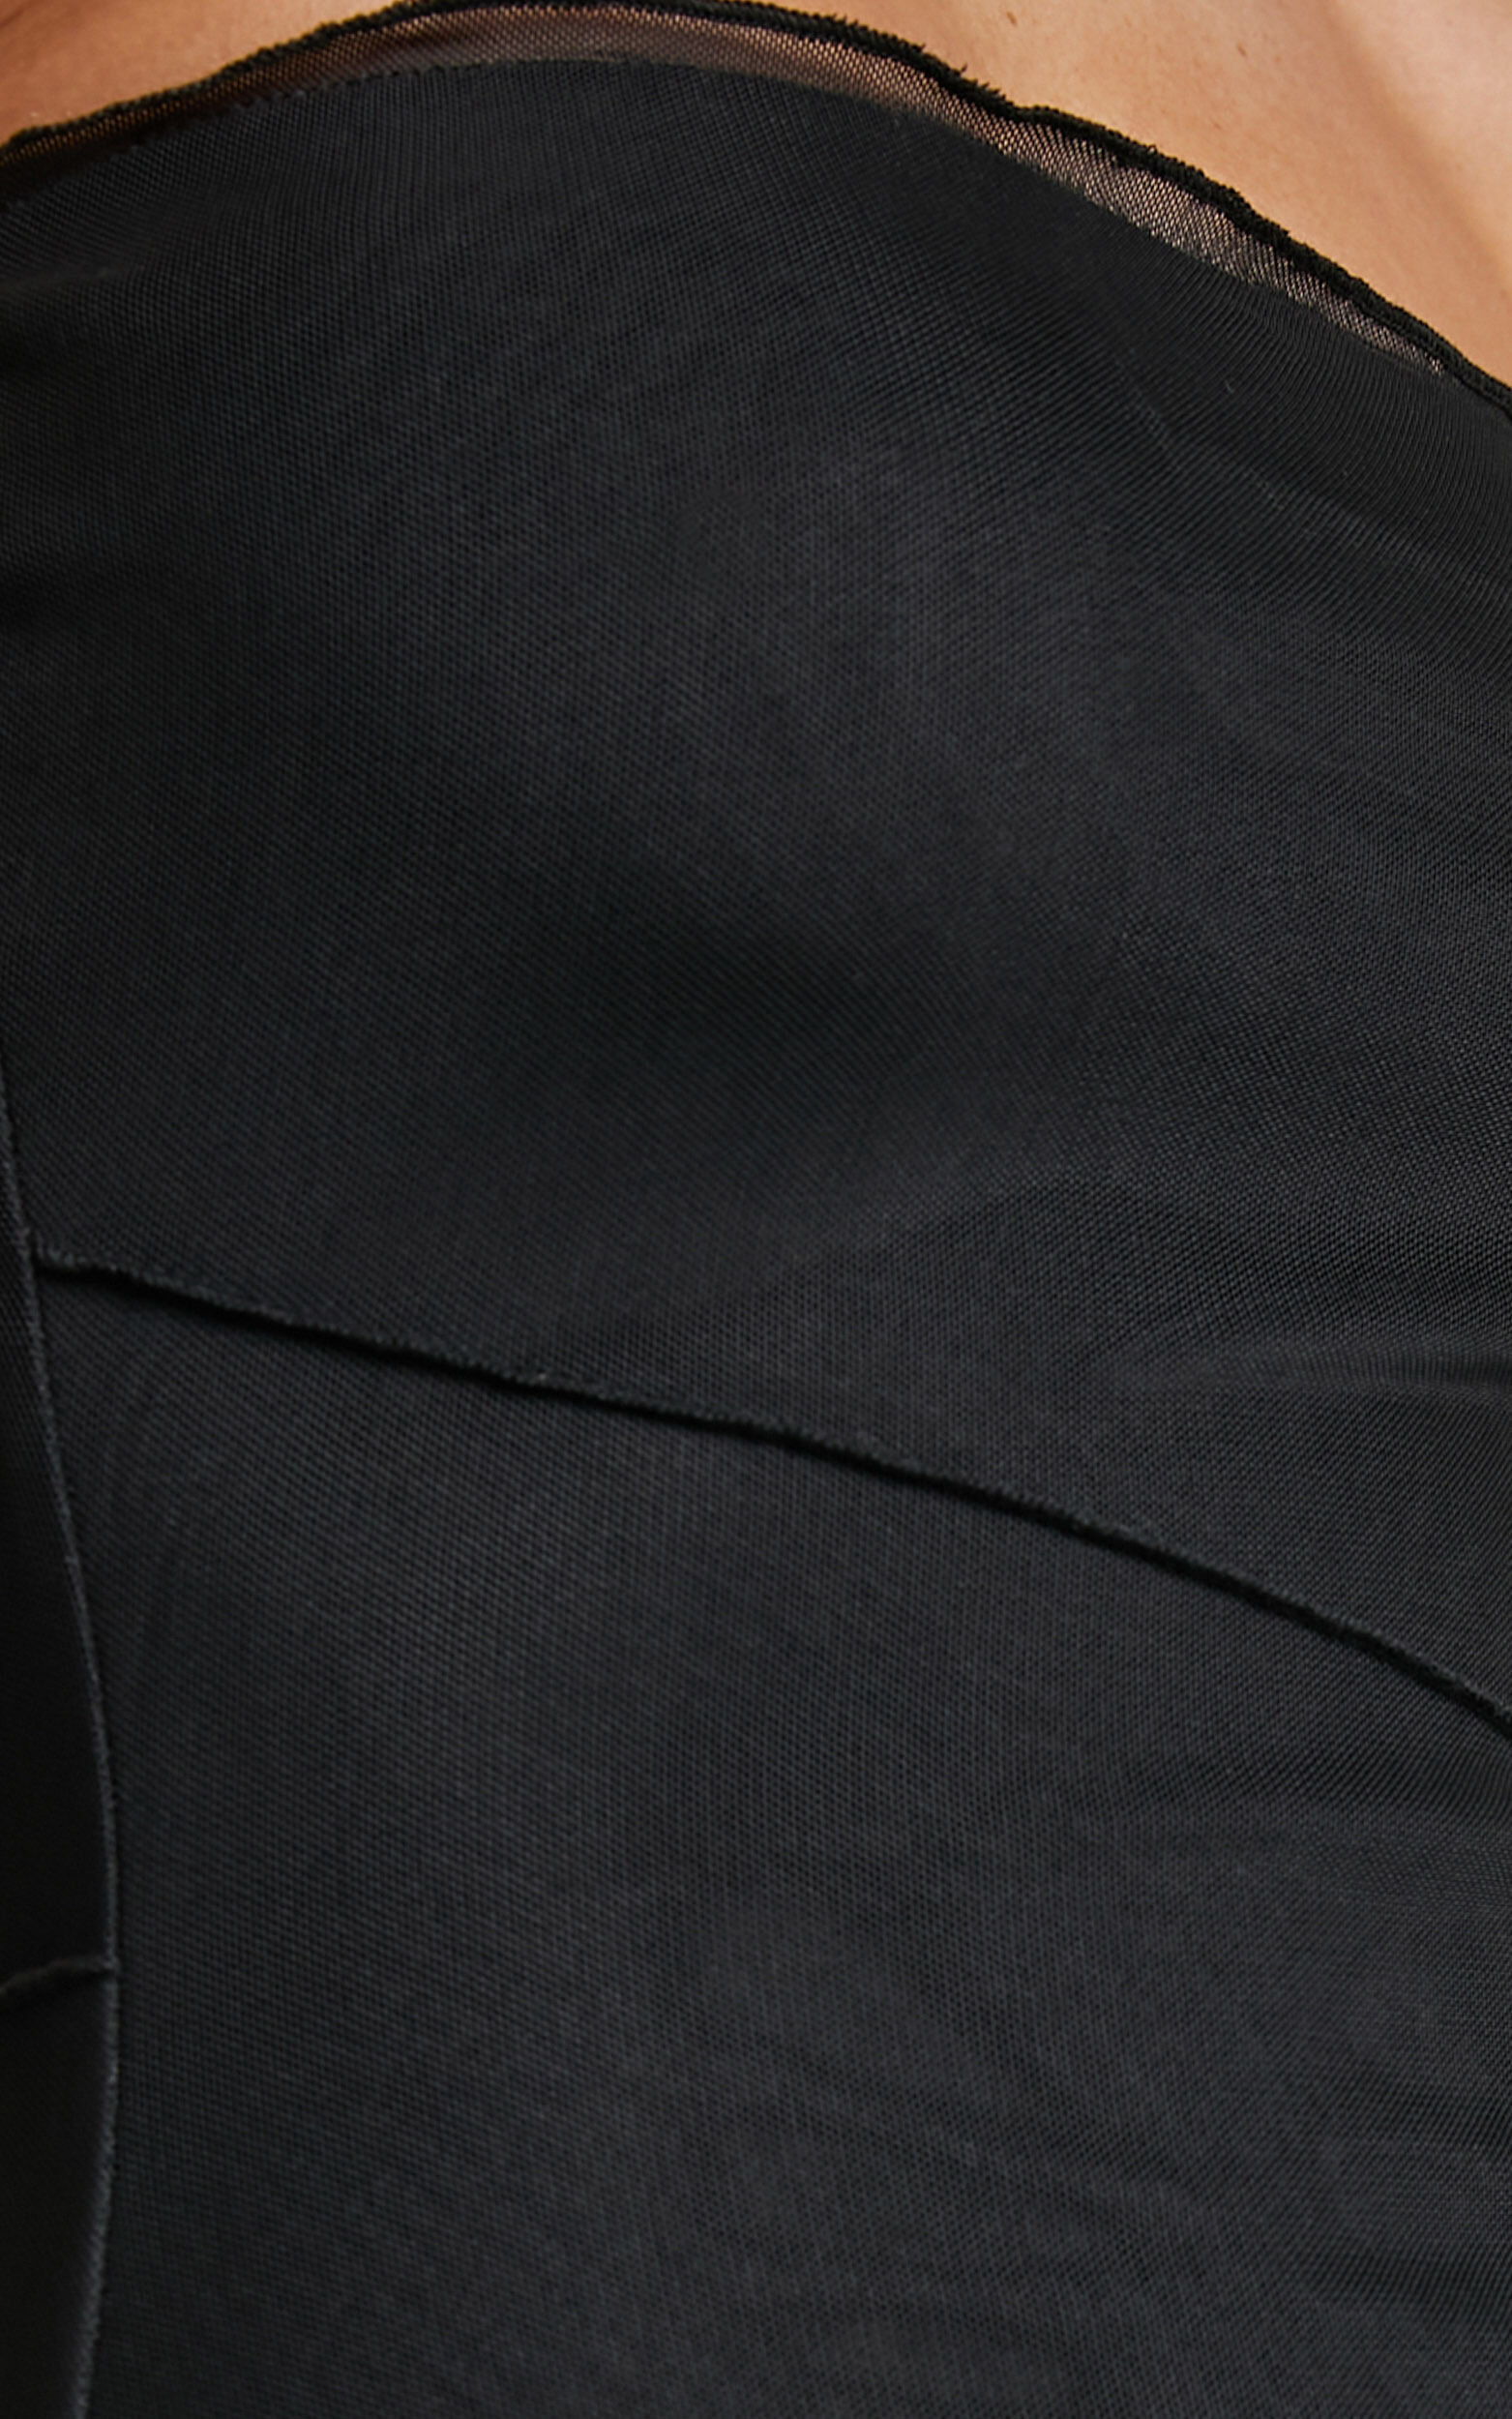 Brunetta Midi Dress - Strapless Mesh Dress in Black